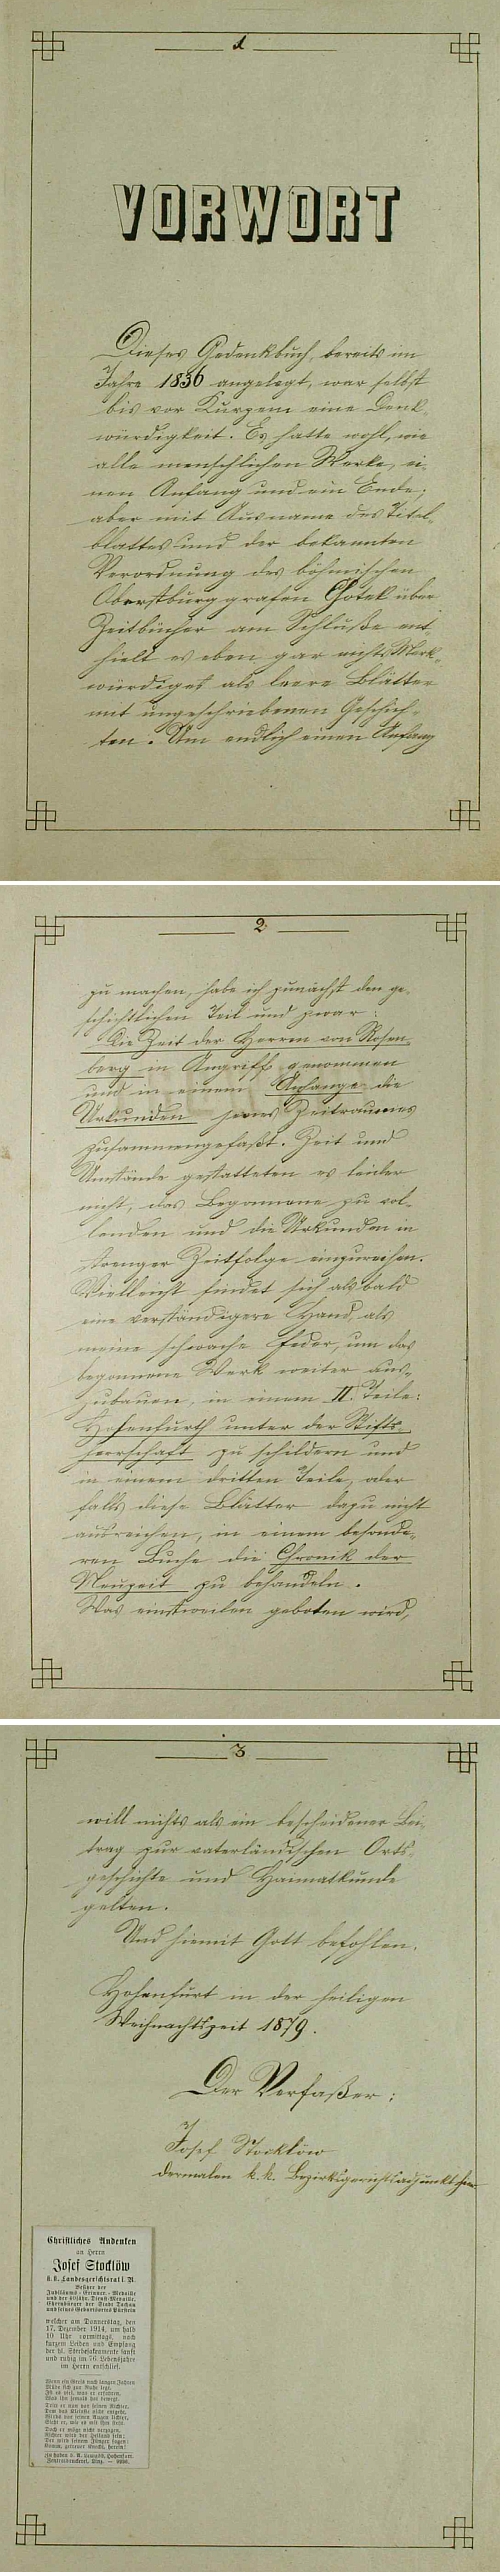 Jeho předmluva k vyšebrodské obecní kronice datované "svatým vánočním časem" roku 1879 a opatřené jeho podpisem ve funkci c.k. okresního soudního adjunkta